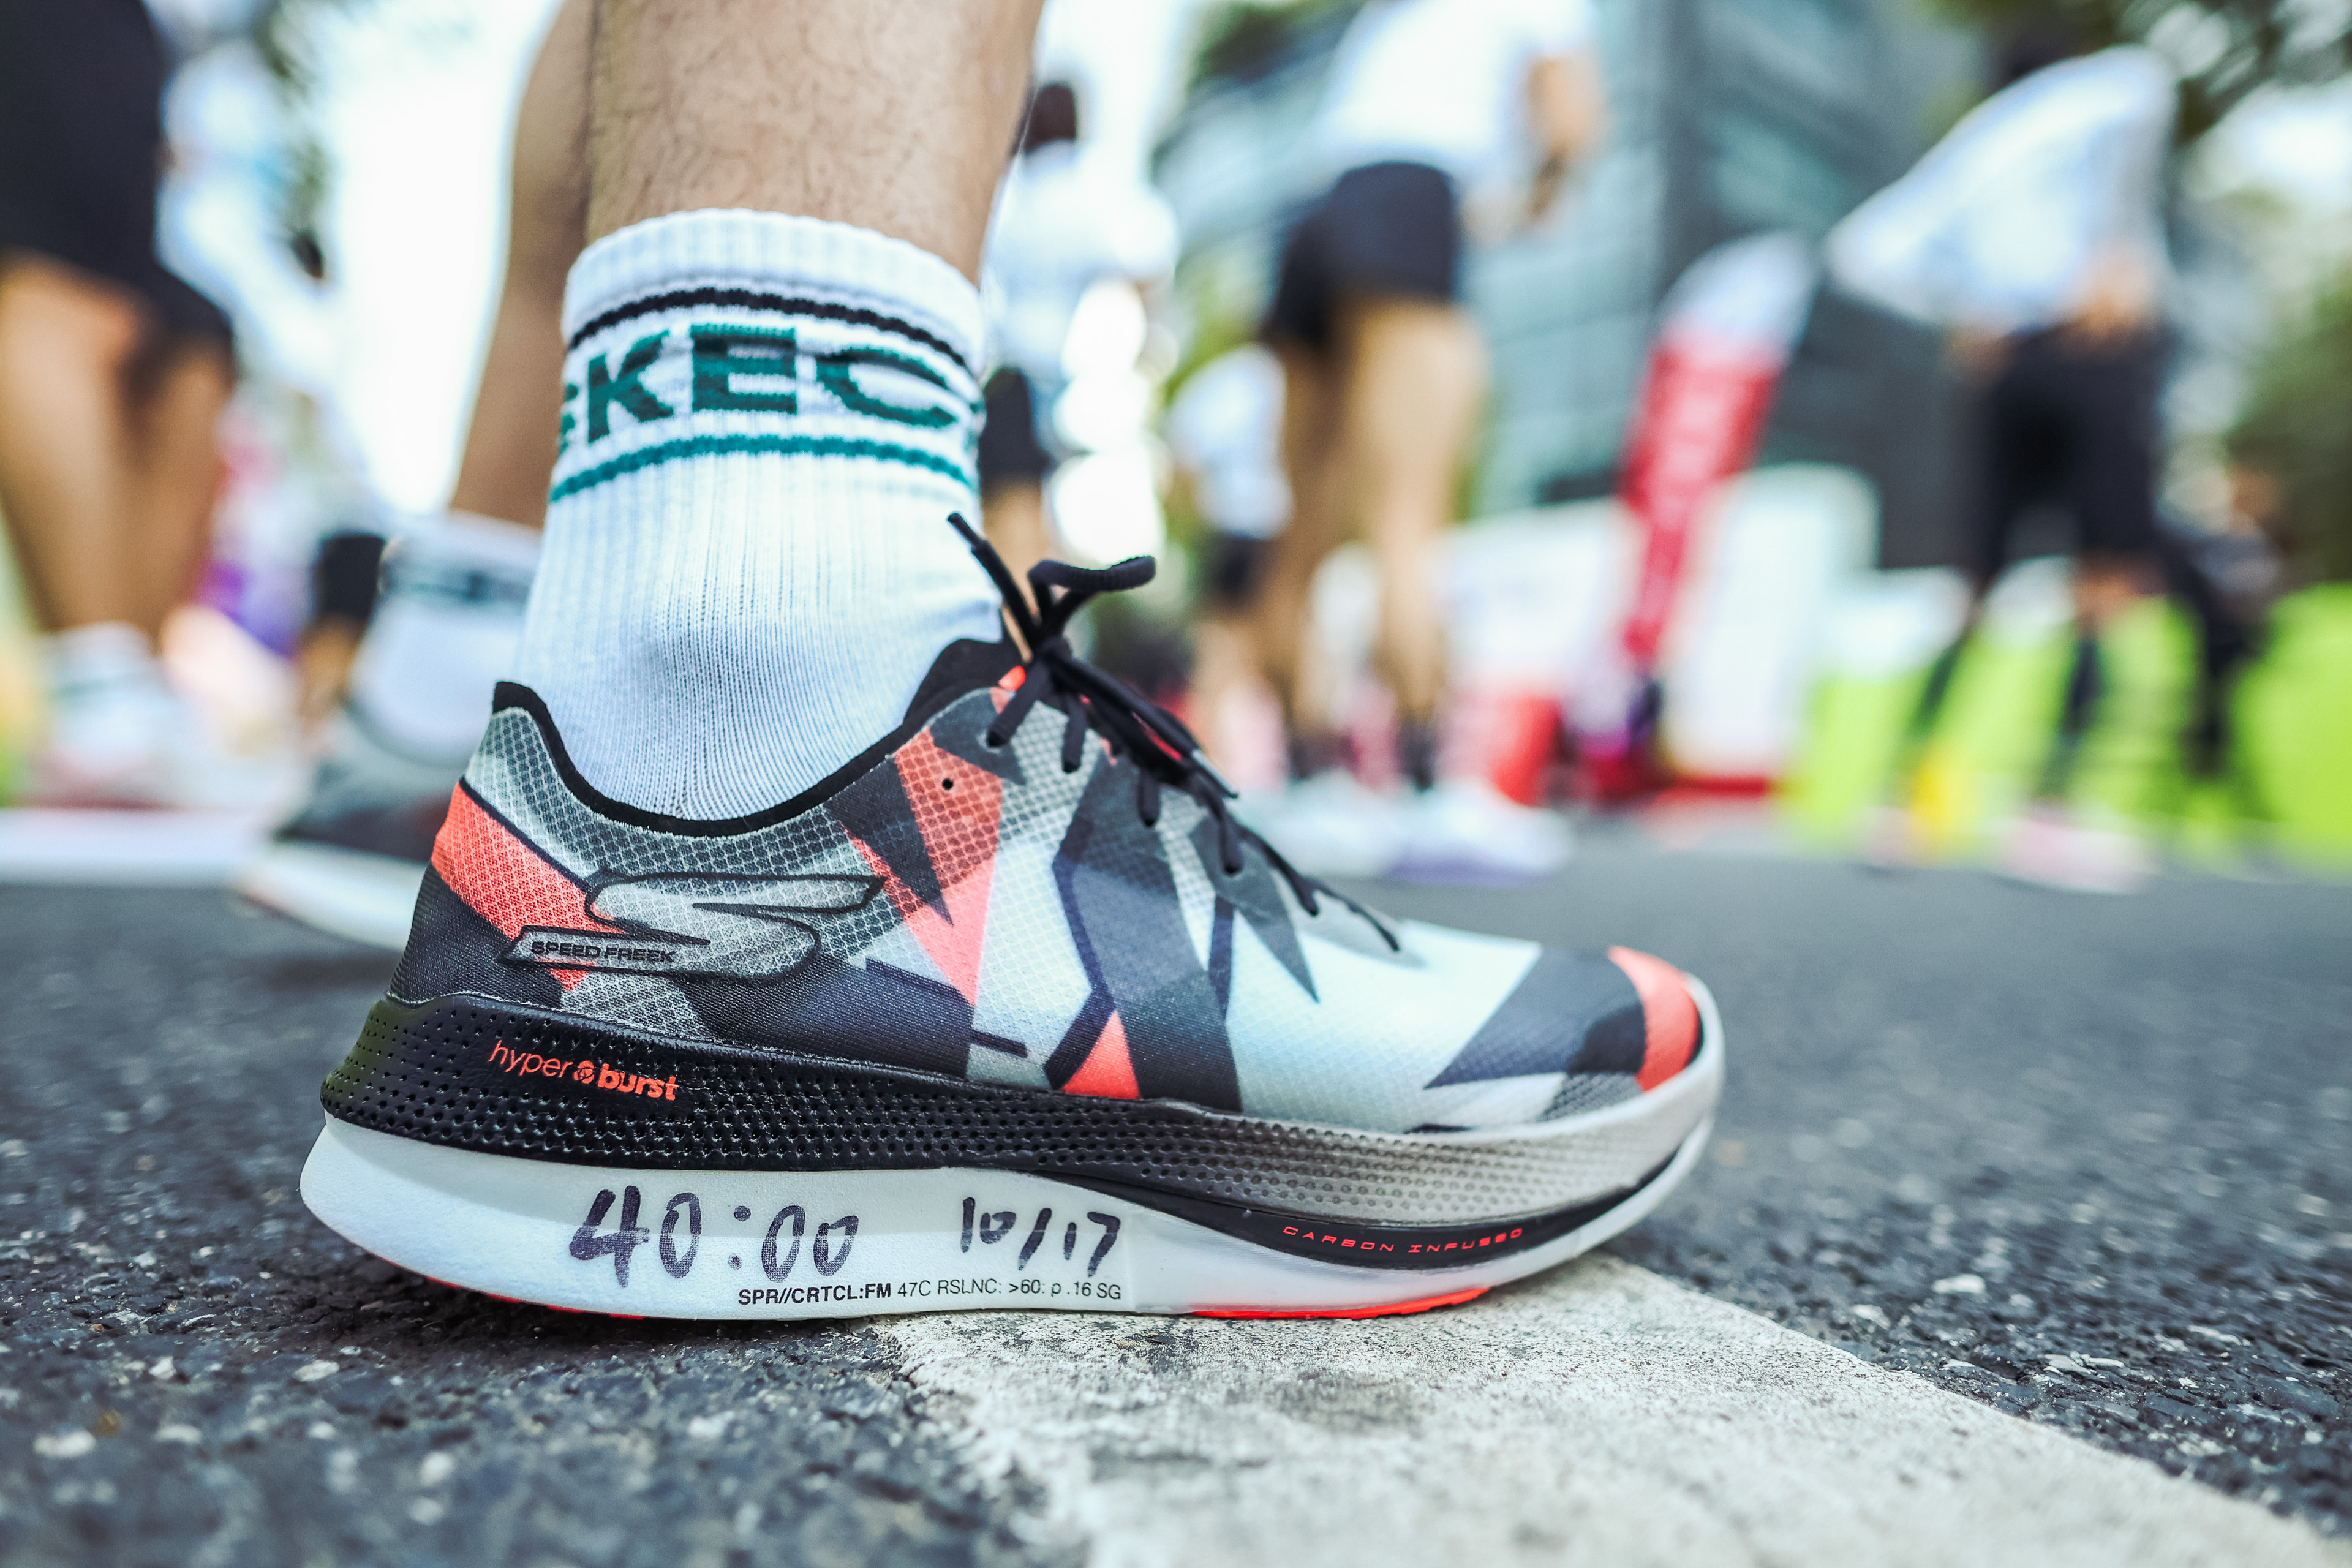 斯凯奇携手上海10K精英赛 引领“非快不可”的全民运动风潮